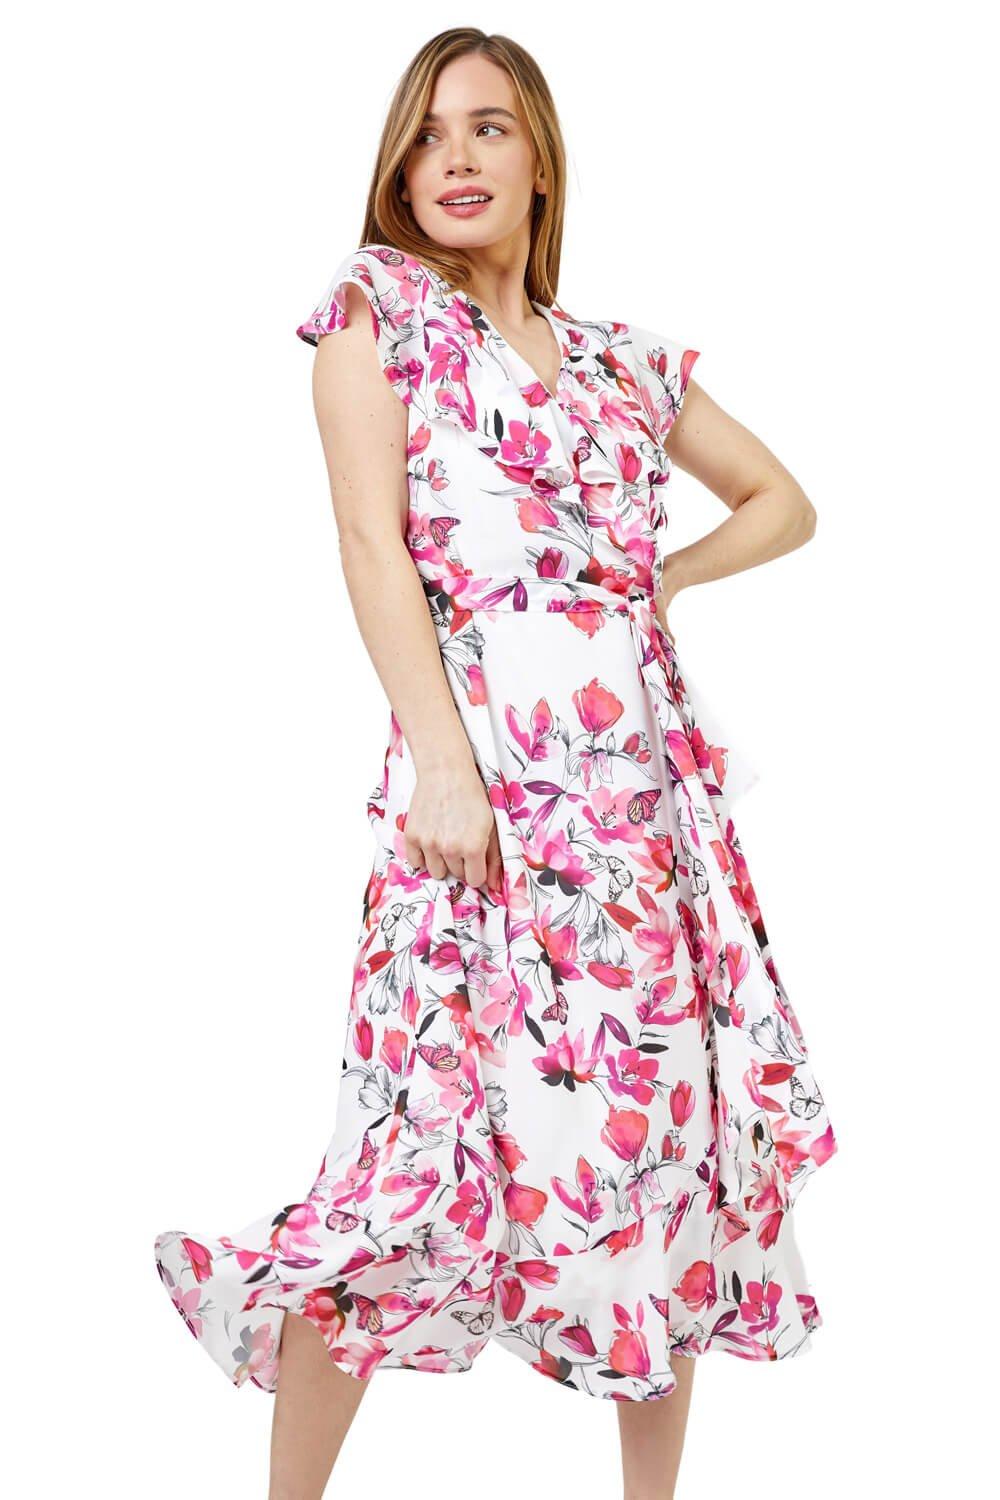 платье mardo из шифона с цветочным принтом розовый s Миниатюрное шифоновое платье с запахом и оборками с цветочным принтом Roman, розовый